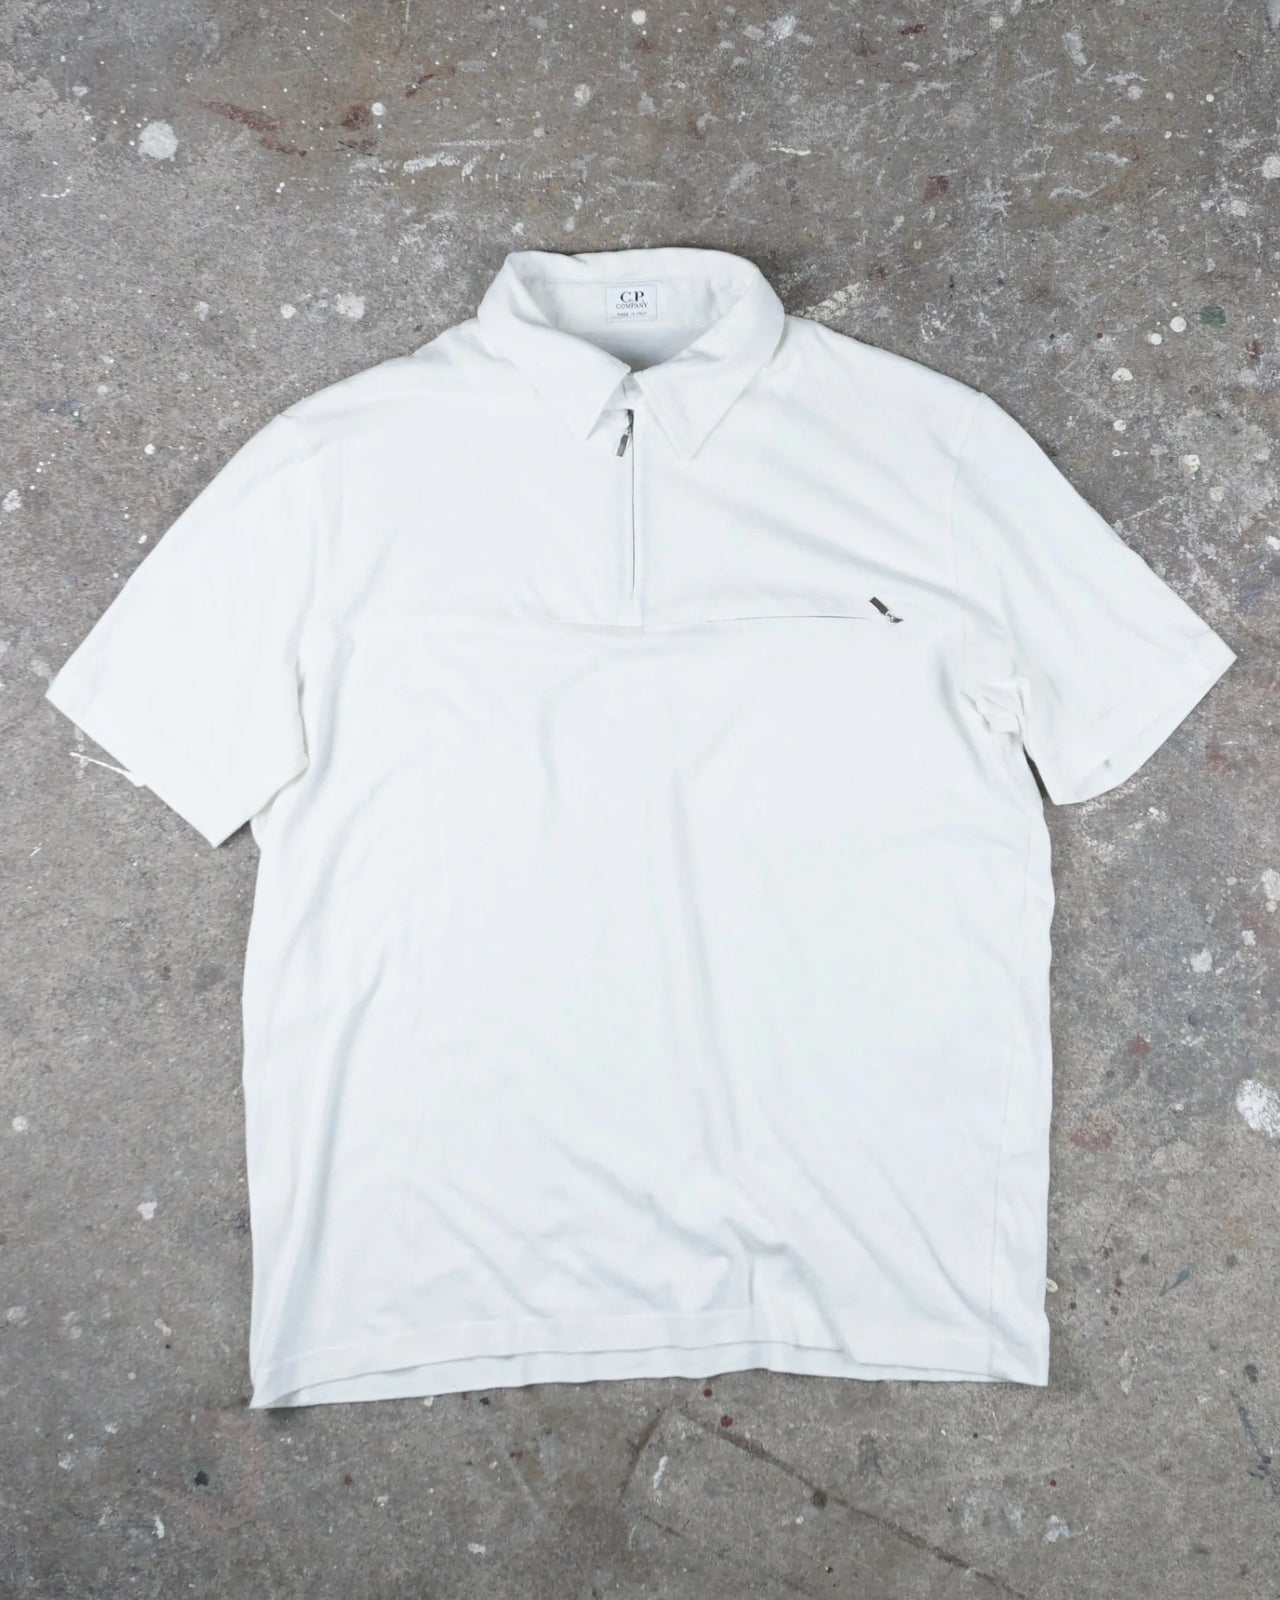 C.P Company Polo Shirt White SS 2001